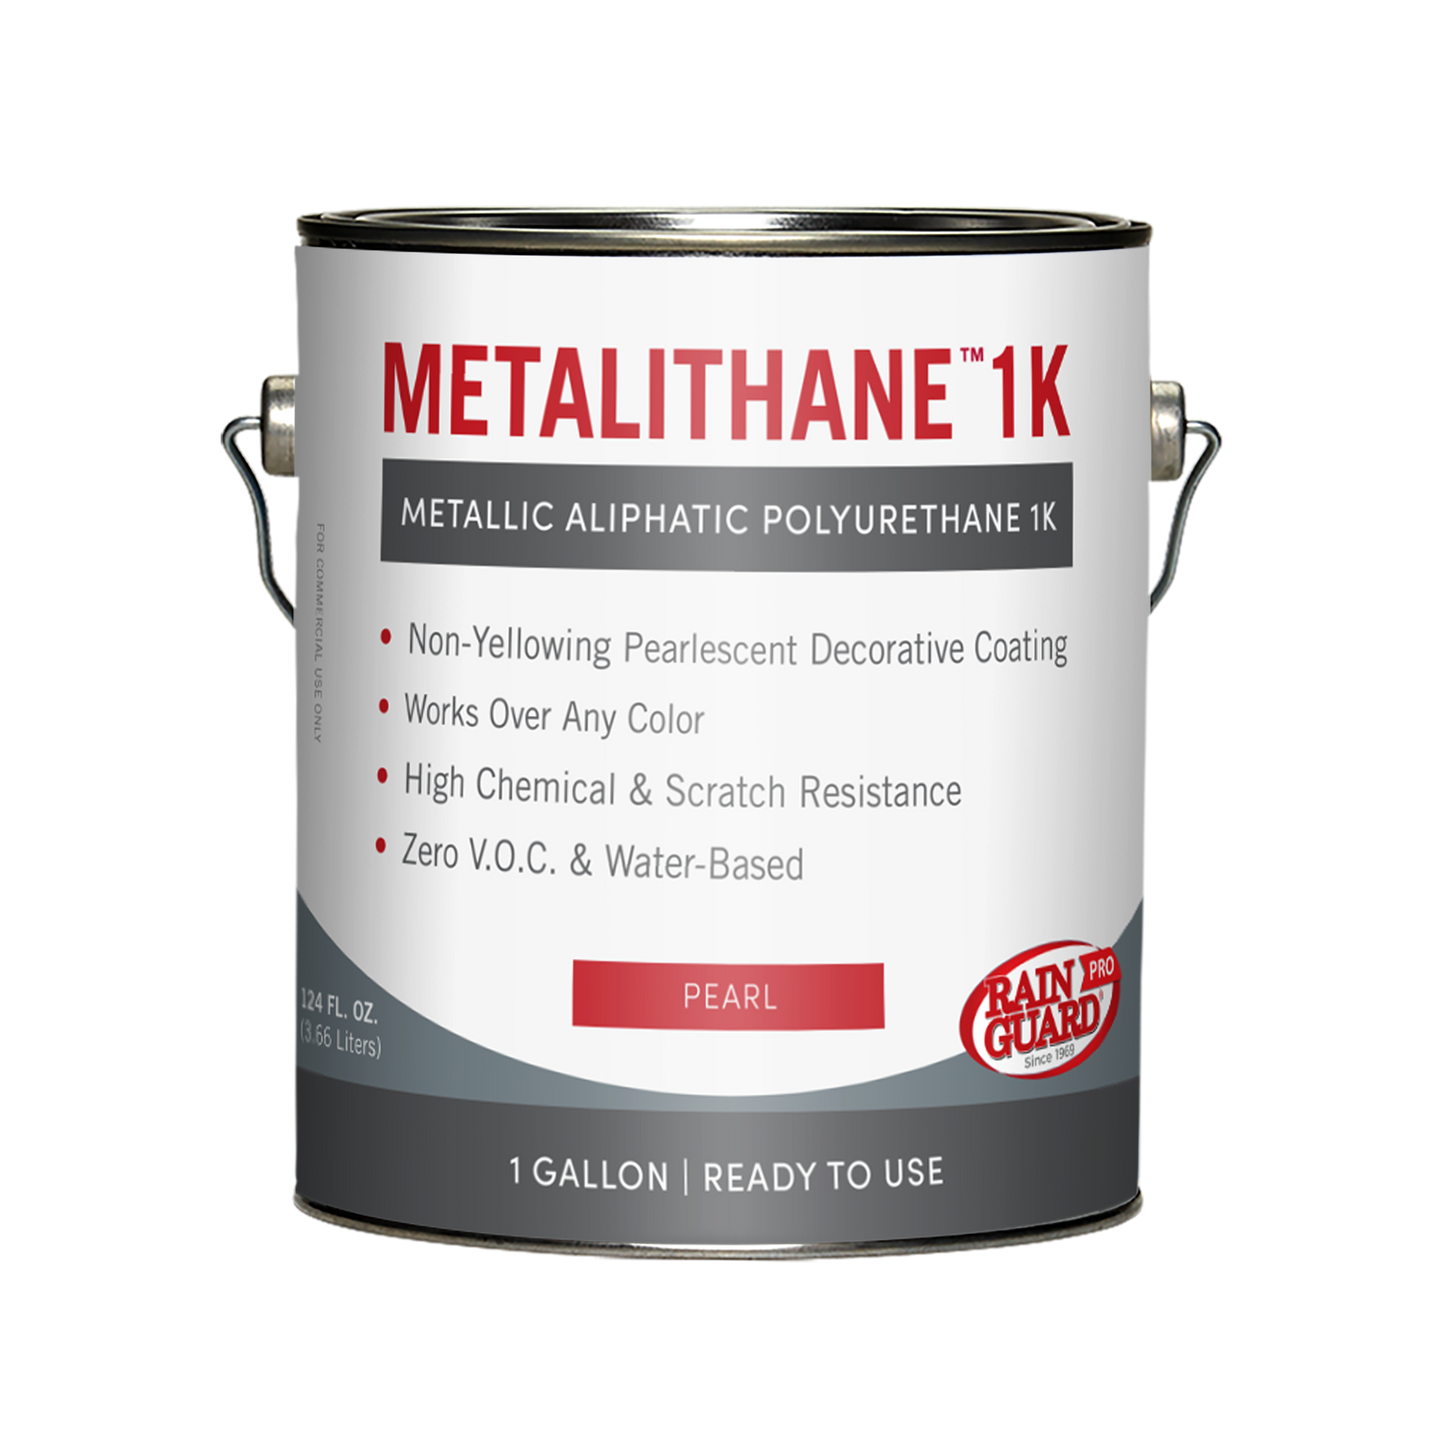 Metalithane™ 1k